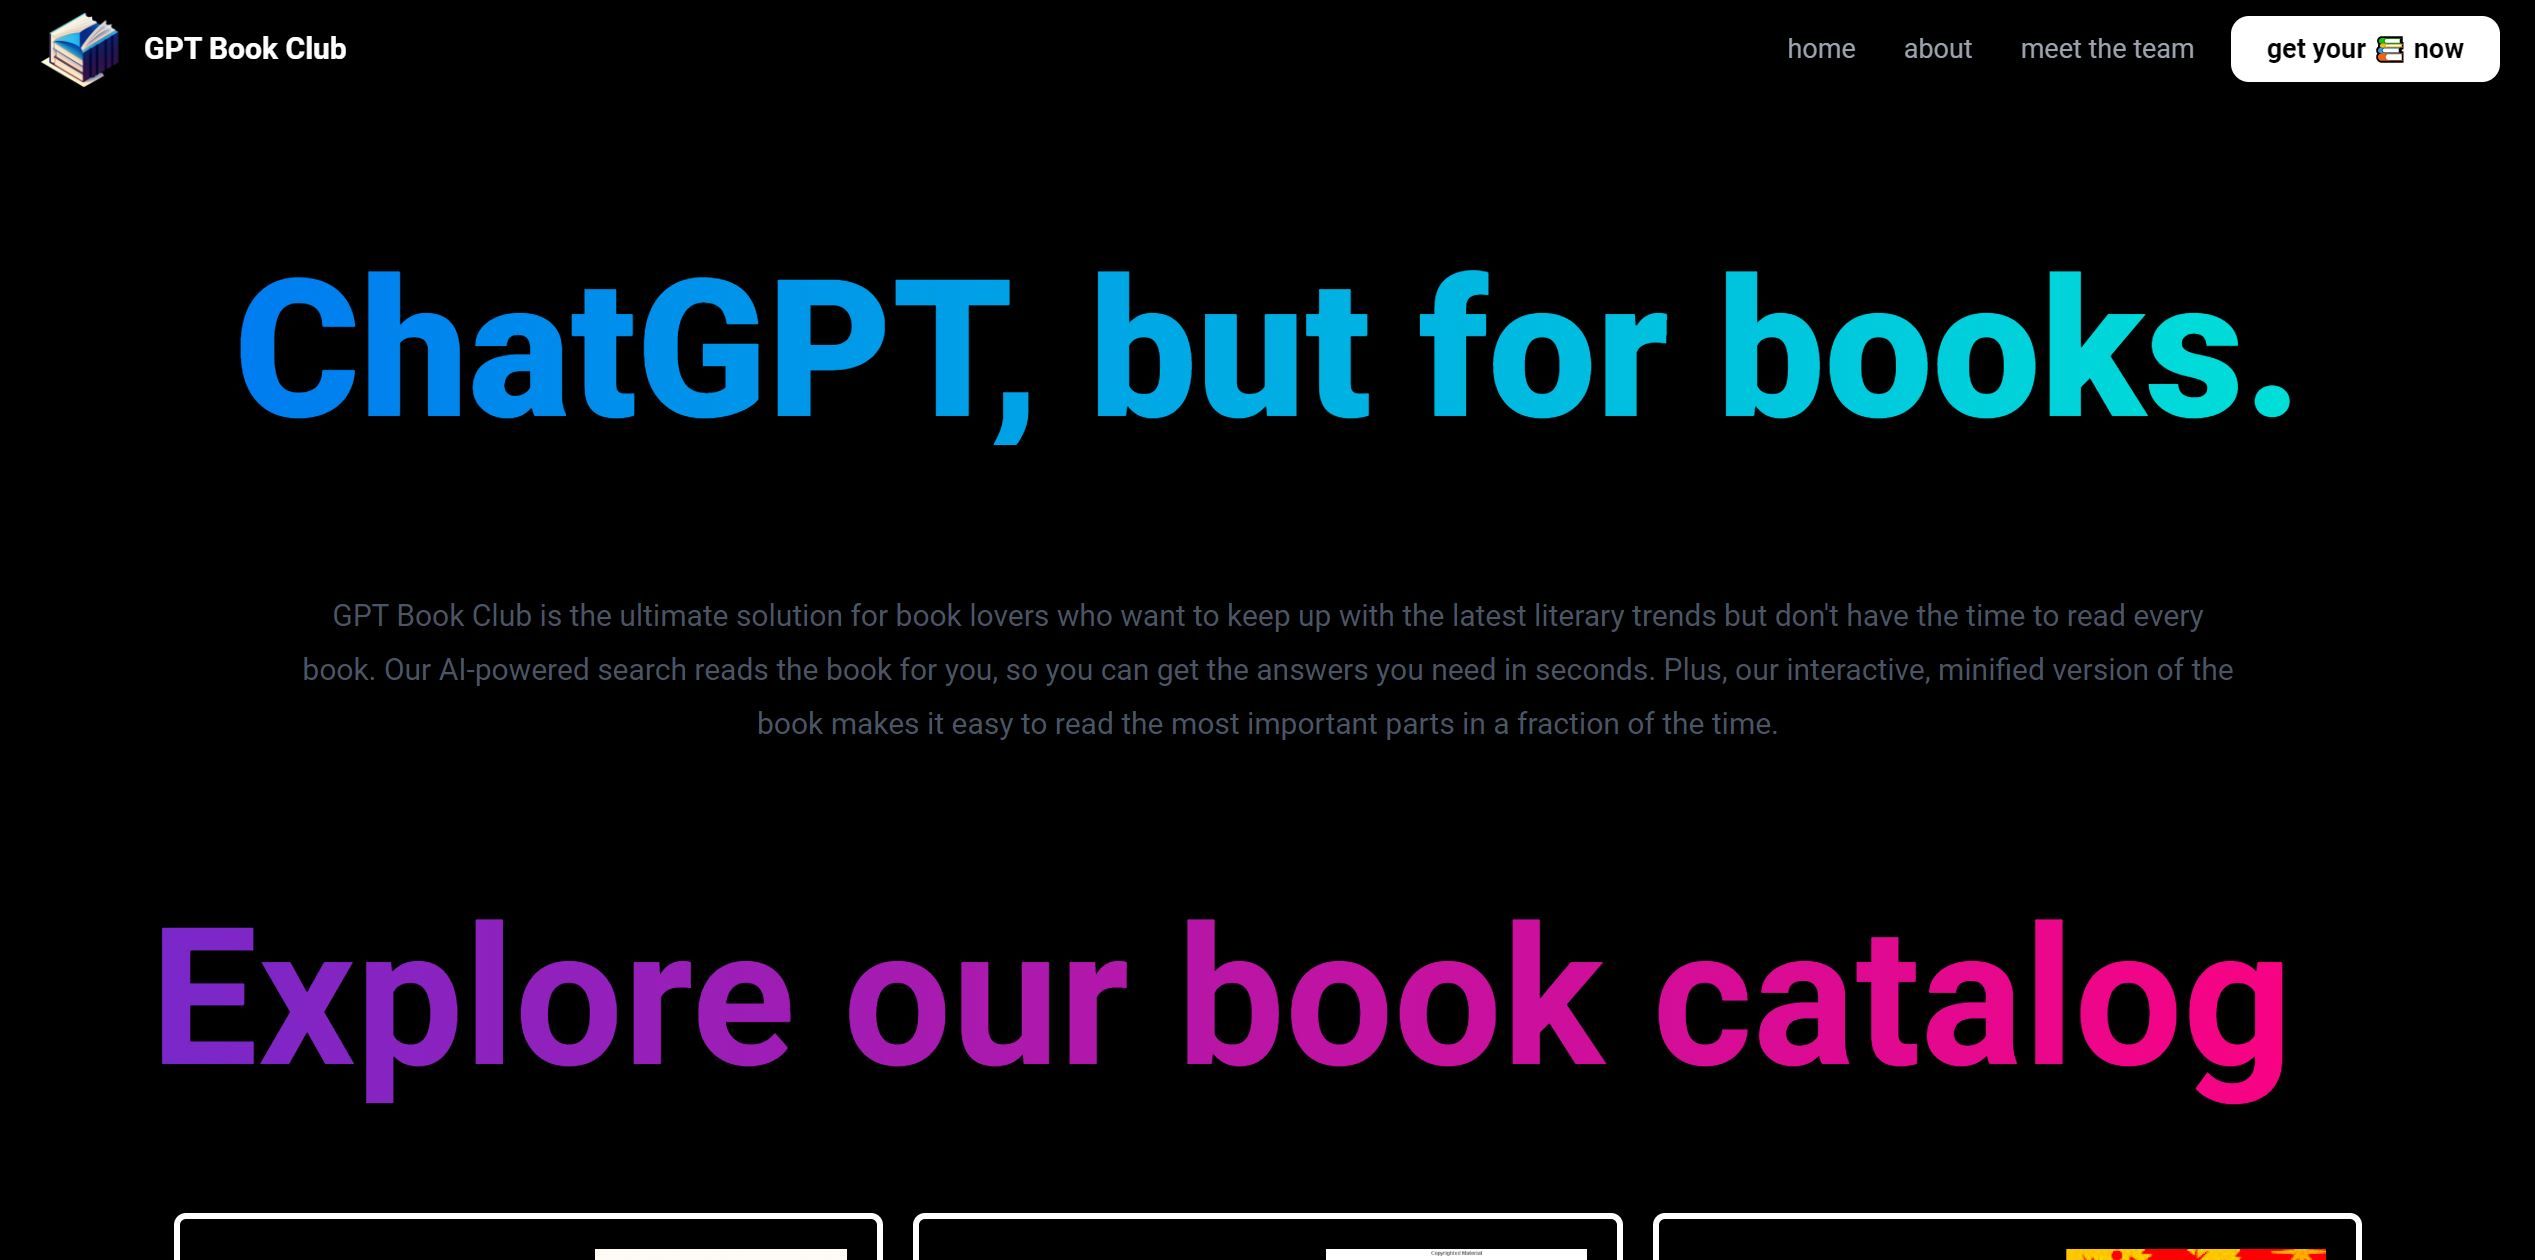 GPT Book Club